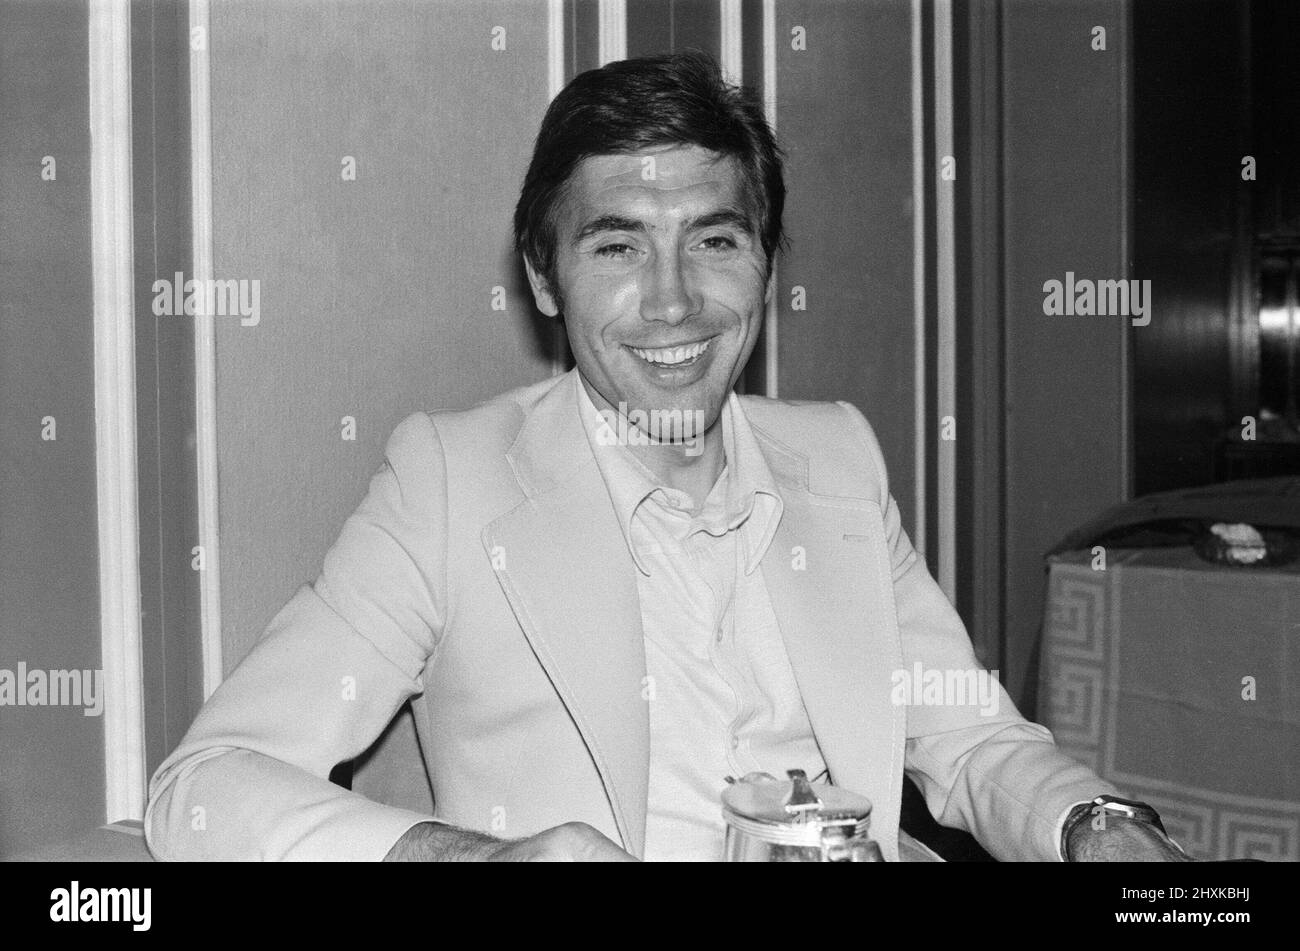 Eddy Merckx, campione del mondo di ciclista belga, è stato raffigurato nel 1977 nel suo hotel di Londra. Nei prossimi giorni Eddy parteciperà al più grande evento ciclistico mai organizzato in Gran Bretagna all'Eastway Cycling Track di Stratford. Nella sua carriera, Eddy ha raggiunto 525, vittorie di carriera, che è il più da un ciclista professionale. Vinse il doppio Tour de France - giro d'Italia nel 1970, 1972 e 1974. Vinse il giro d'Italia - Vuelta a Espana nel 1973. Ha 34 vittorie di tappa del Tour de France (il record), tra cui sei tappe nel 1969 e nel 1972, e otto tappe nel 1970 e nel 1974. Eddy Merckx vero nome è Éd Foto Stock